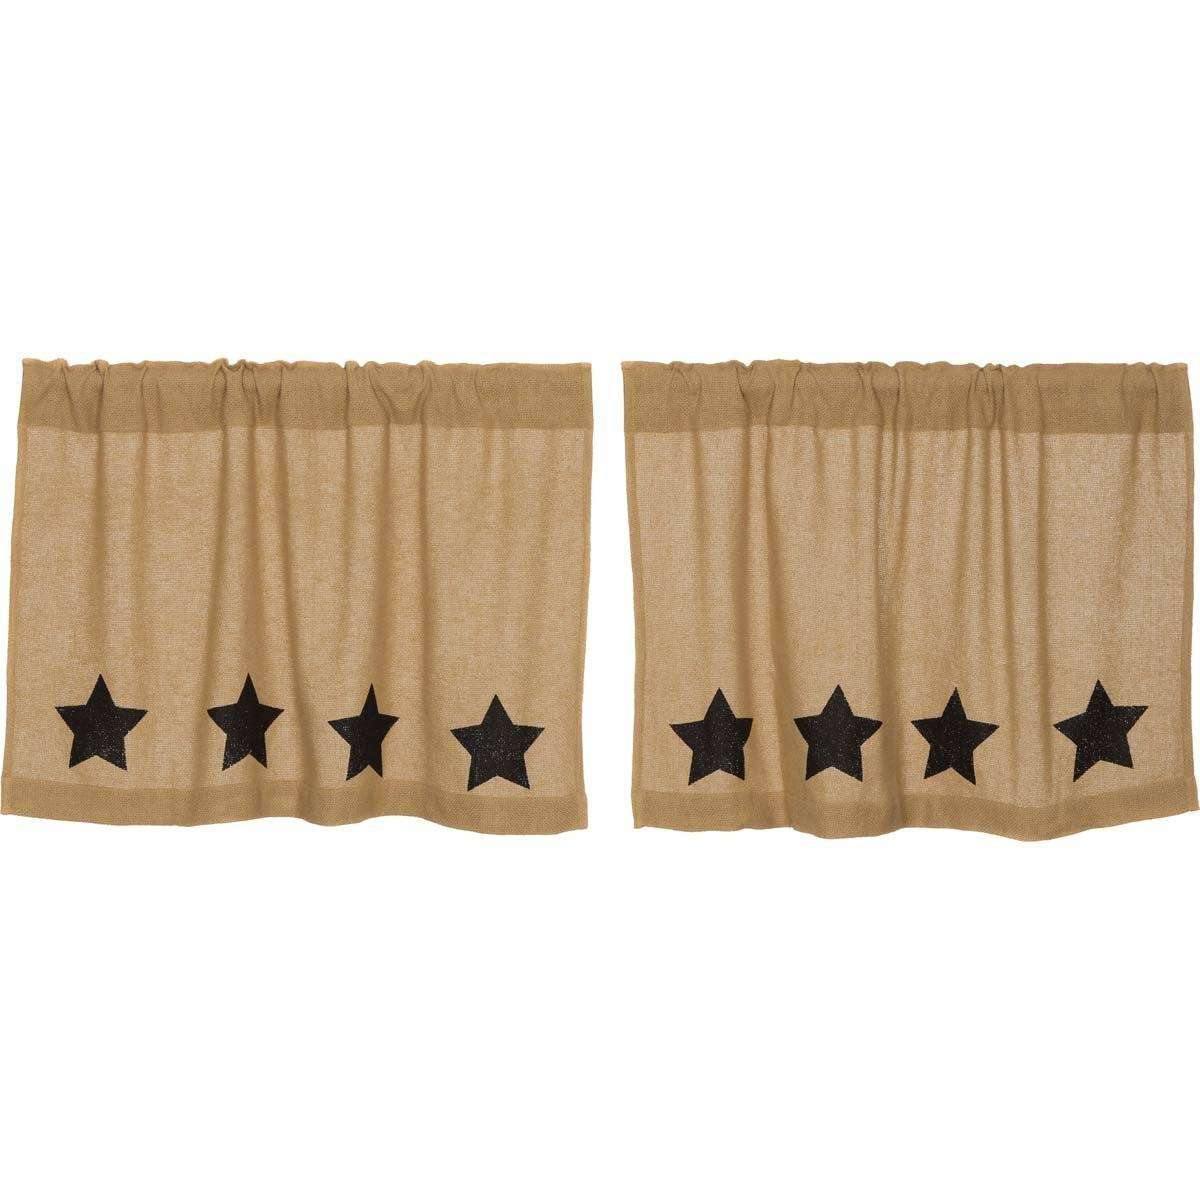 Burlap w/Black Stencil Stars Tier Curtain Set of 2 L24xW36 - The Fox Decor